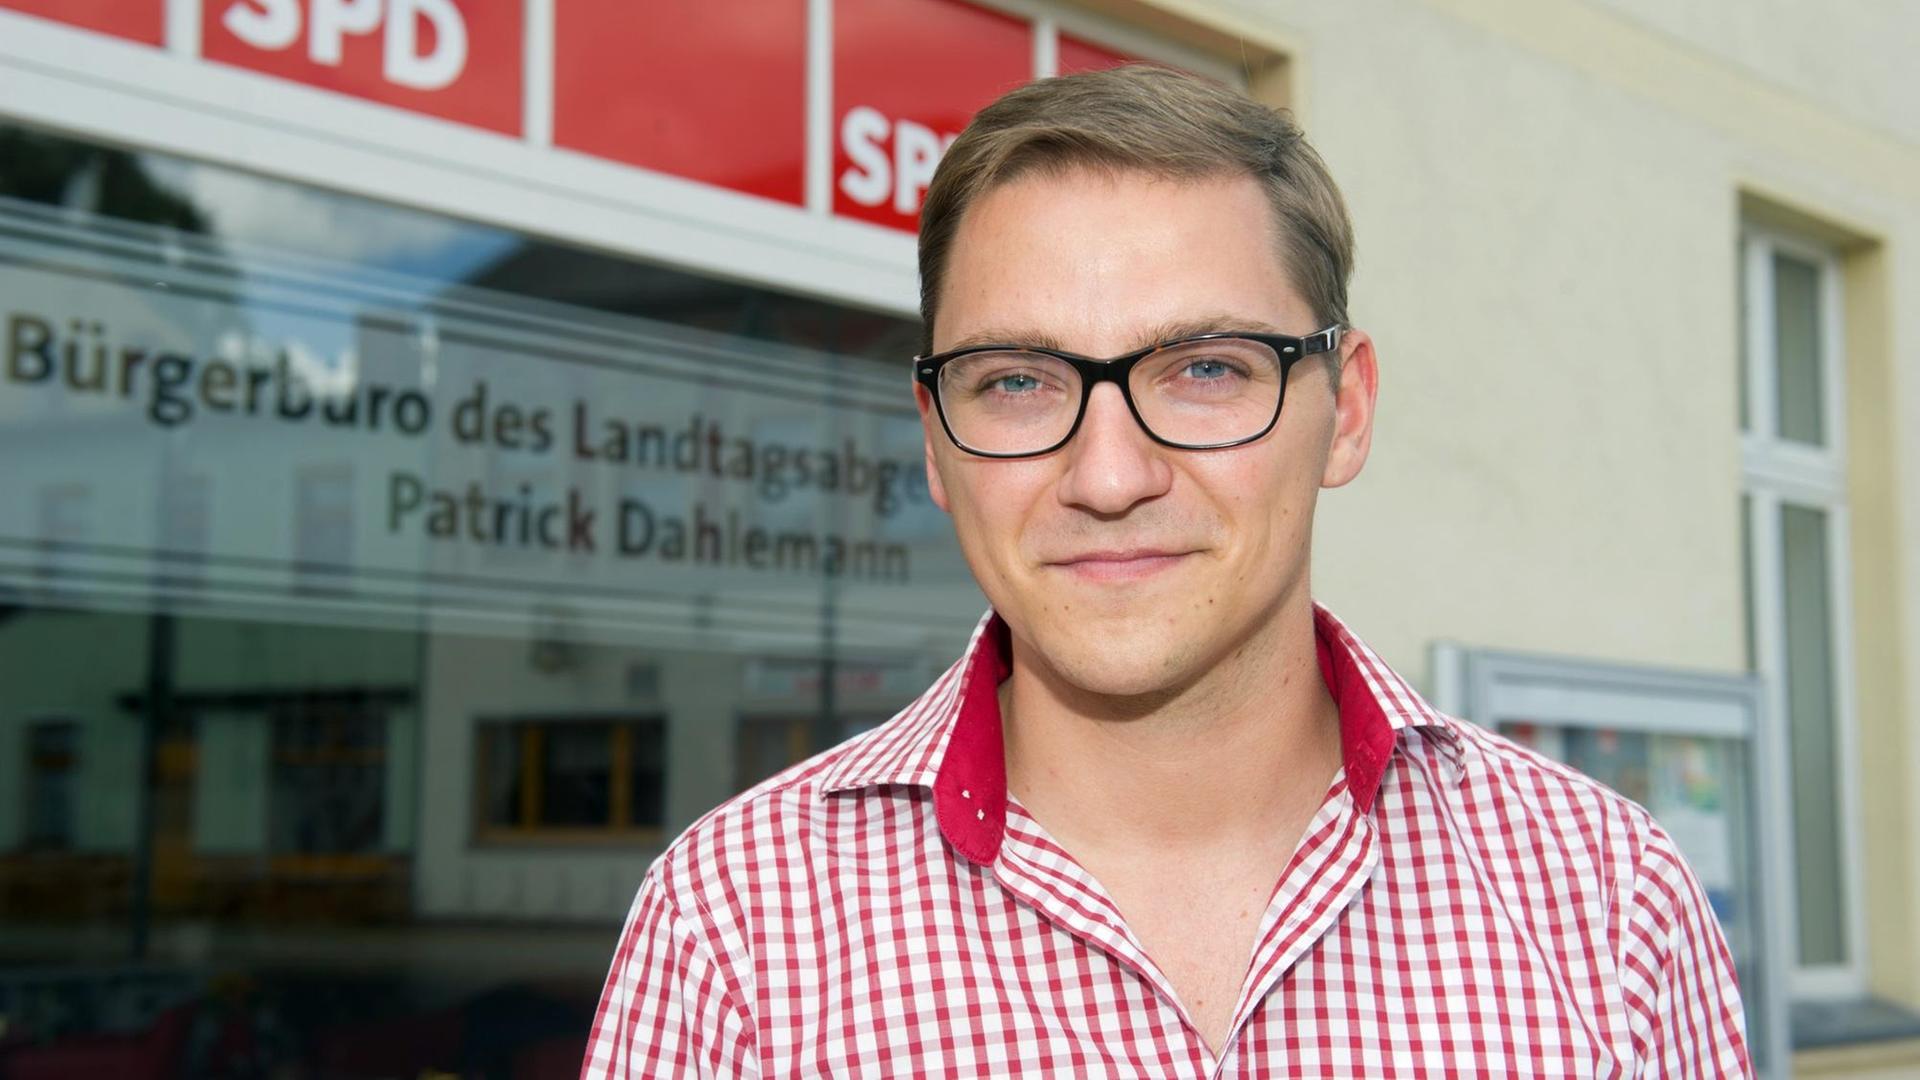 Der SPD-Landtagsabgeordnete Patrick Dahlemann vor seinem Bürgerbüro in Torgelow im Kreis Vorpommern-Greifswald (Mecklenburg-Vorpommern).